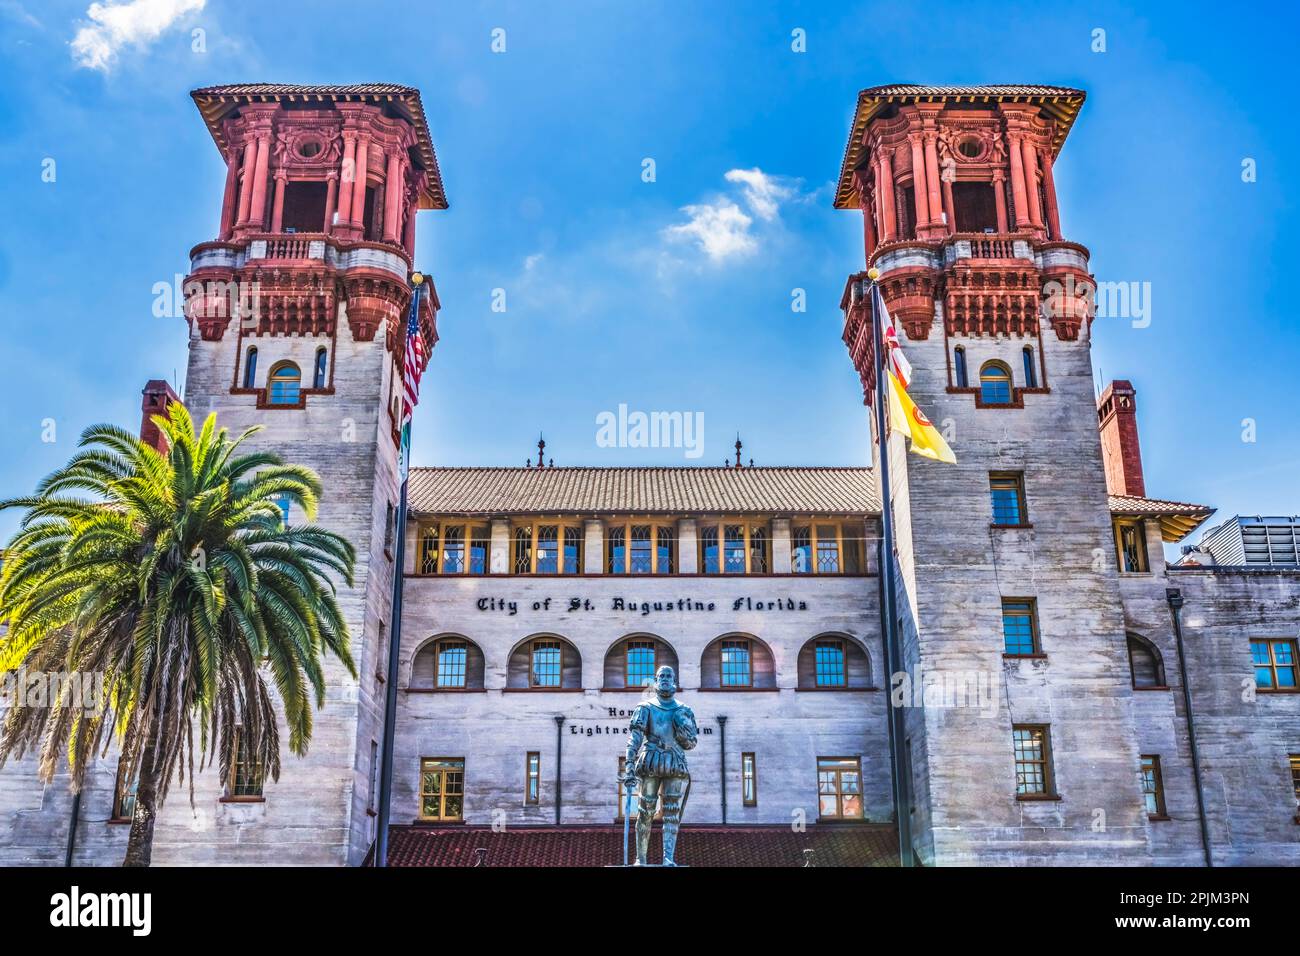 Hôtel de ville, St. Augustine, Floride. À l'origine Alcazar Hotel, 1888. Aviles fondateur de la statue de St. Augustine, réplique de la statue de 1500 sur la tombe en Espagne Banque D'Images